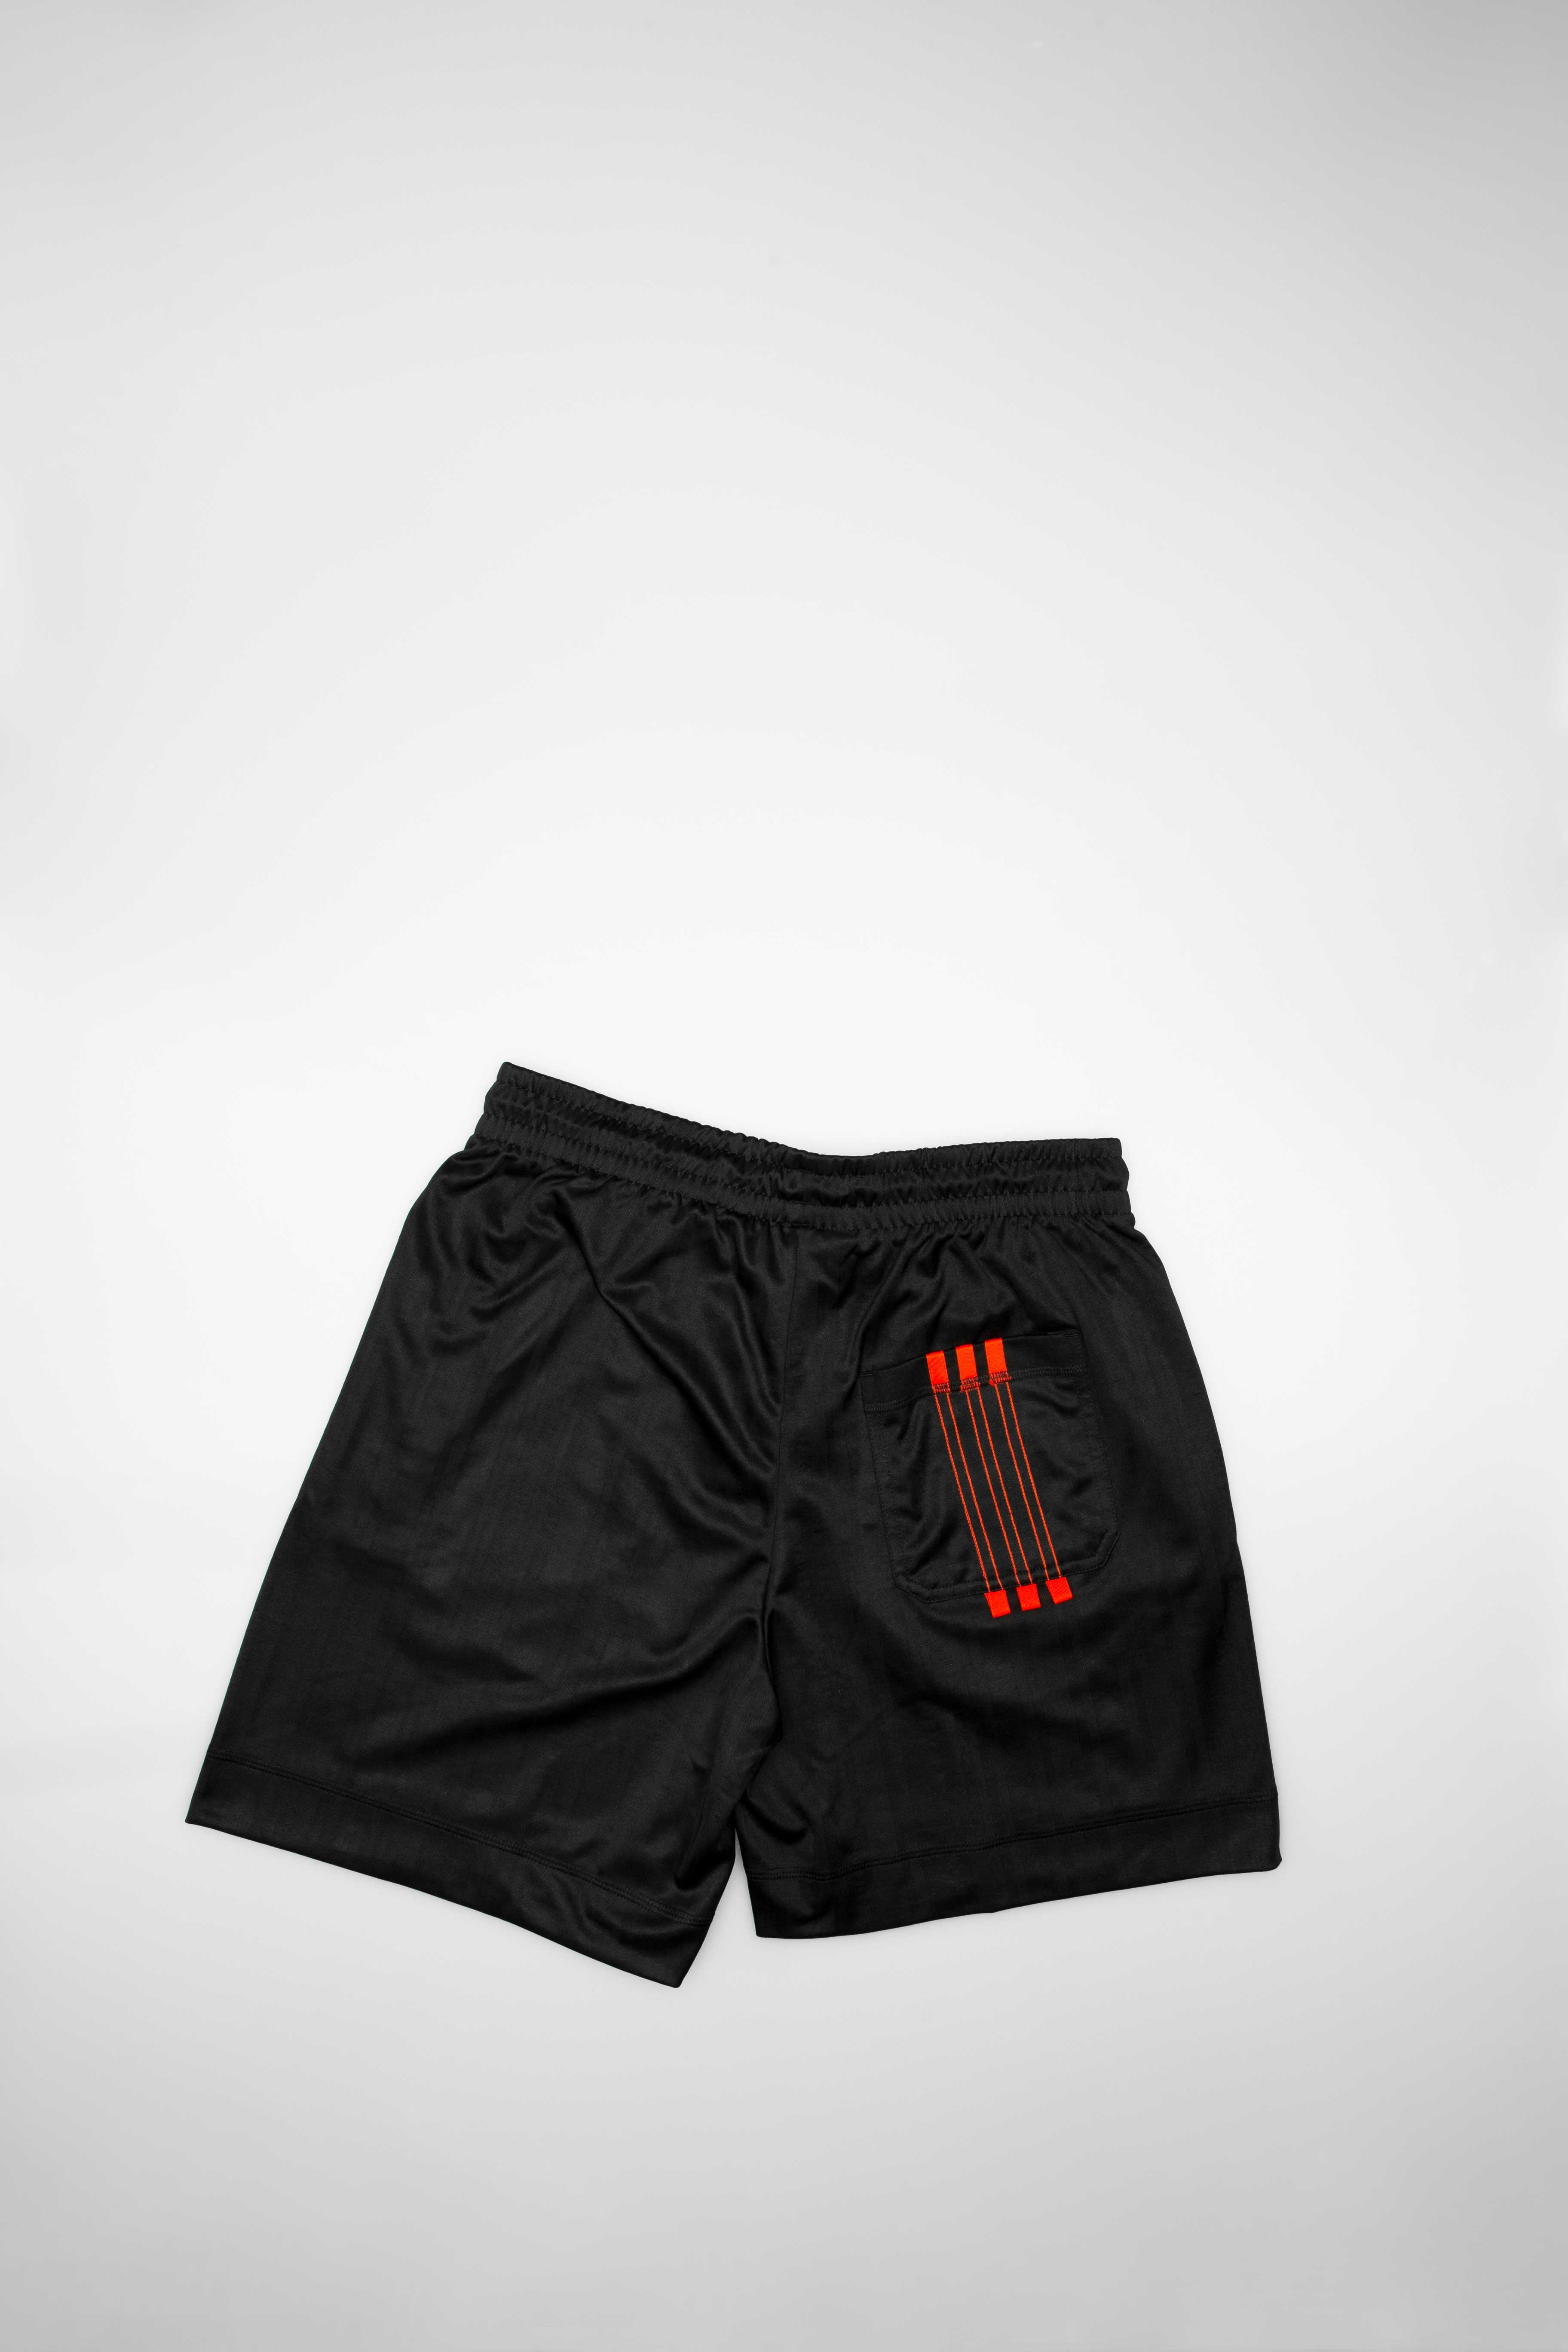 Adidas Consortium DM9683 adidas Originals X Alexander Wang Mens Soccer Shorts - Black/Red ShopNiceKicks.com